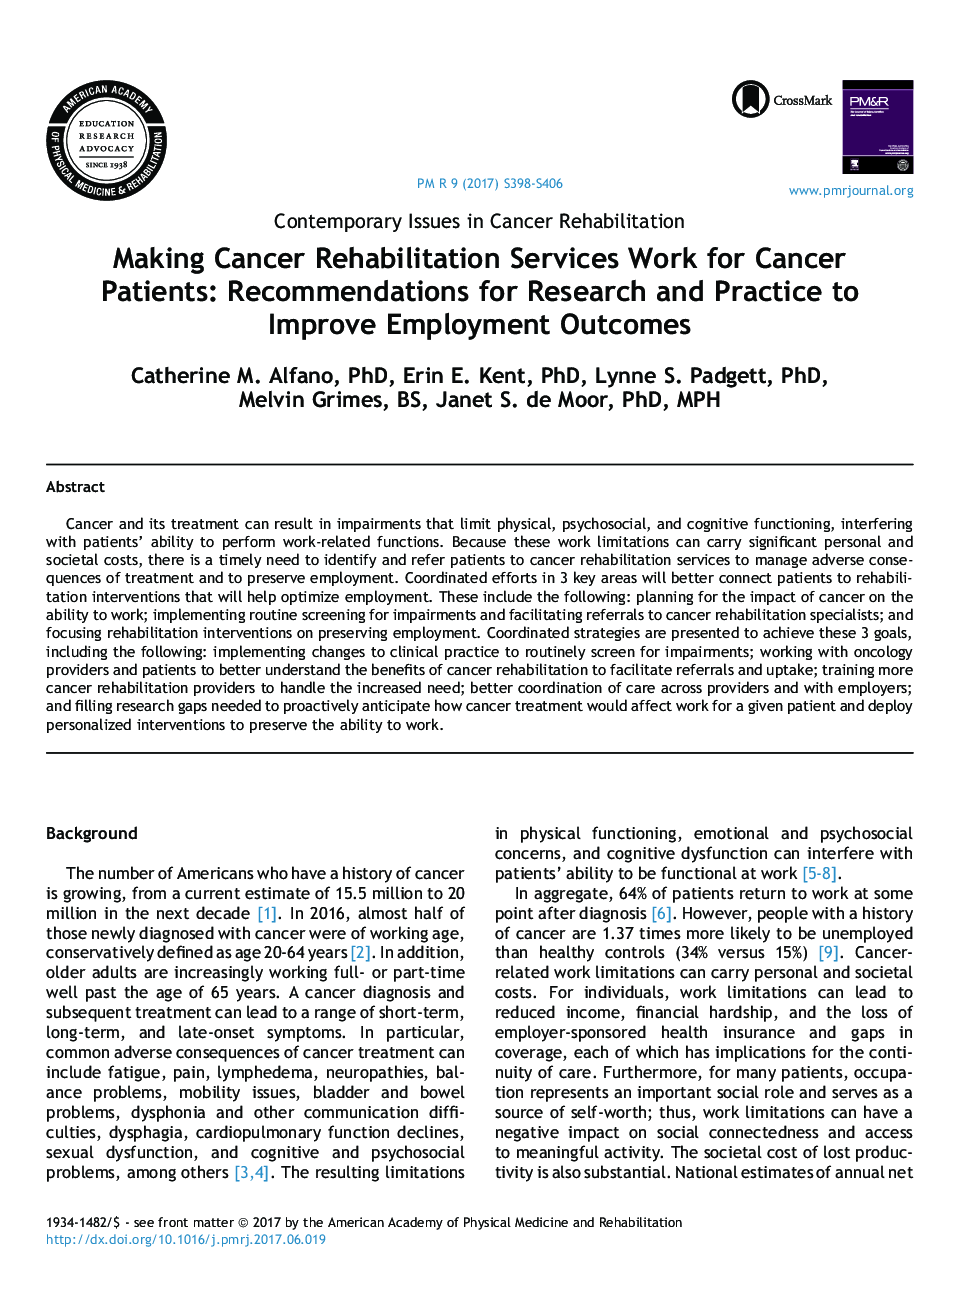 ایجاد خدمات توانبخشی سرطان برای بیماران سرطانی: توصیه هایی برای تحقیق و تمرین برای بهبود نتایج استخدامی 